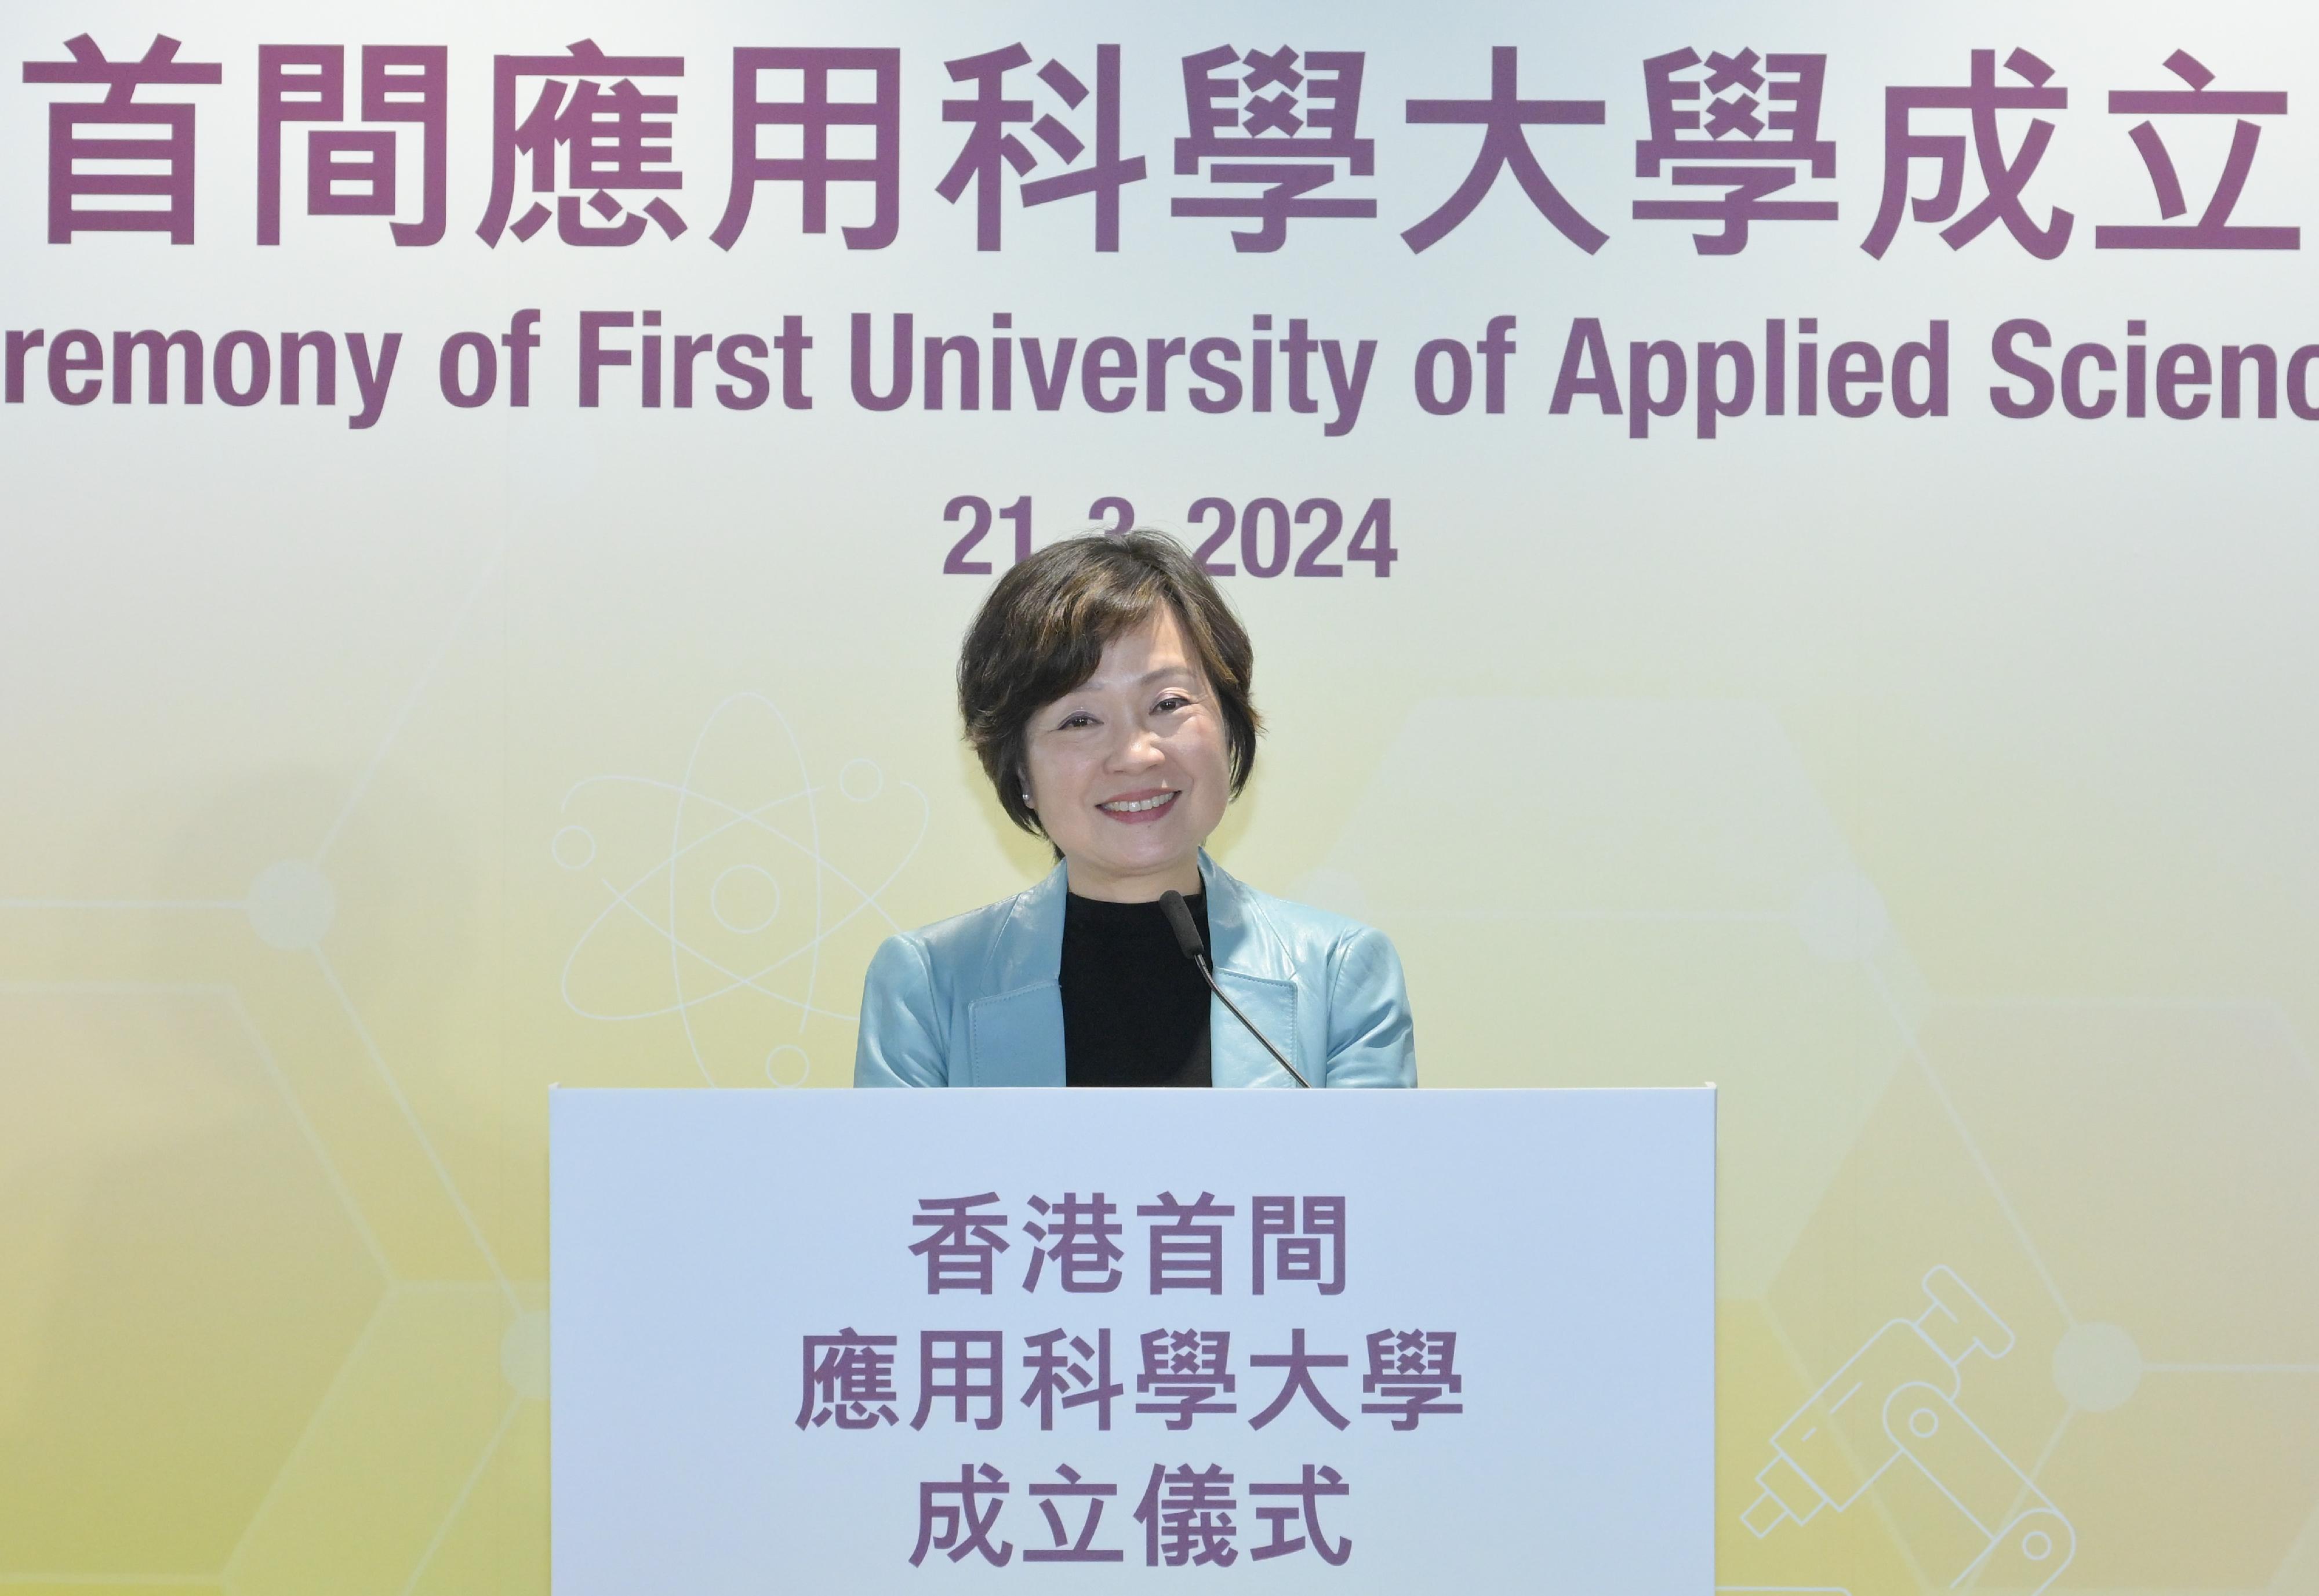 教育局今日（三月二十一日）宣布香港都会大学成为香港首间应用科学大学。图示教育局局长蔡若莲博士在仪式上致辞。